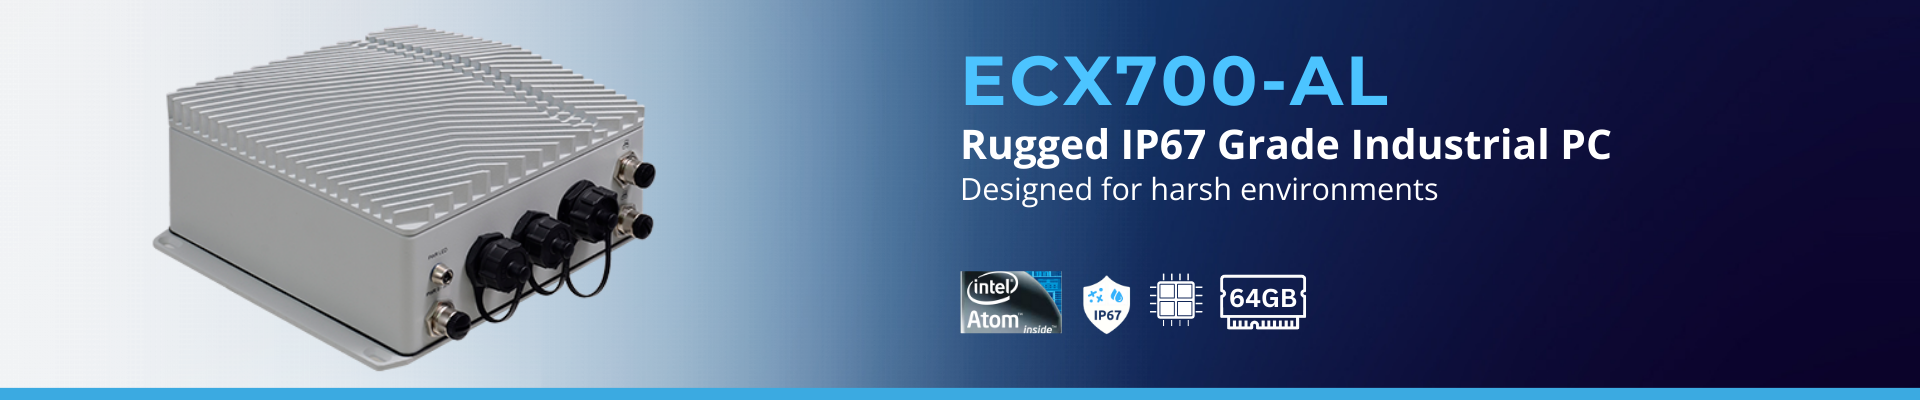 ECX700-AL: Intel Apollo Lake® Rugged PC